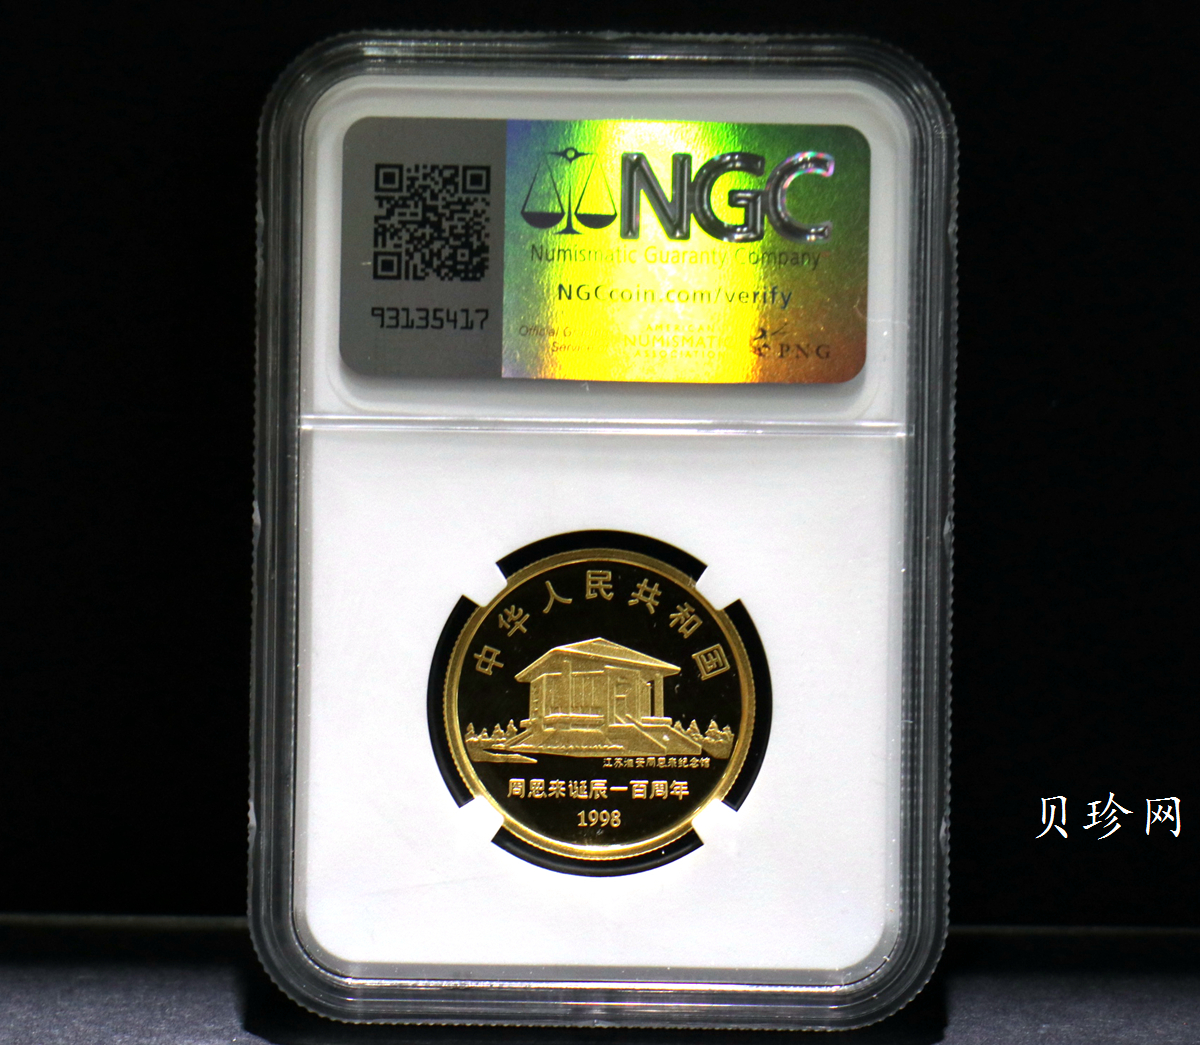 【980301】1998年周恩来诞辰100周年金银纪念币-周恩来头像1/2盎司精制金币